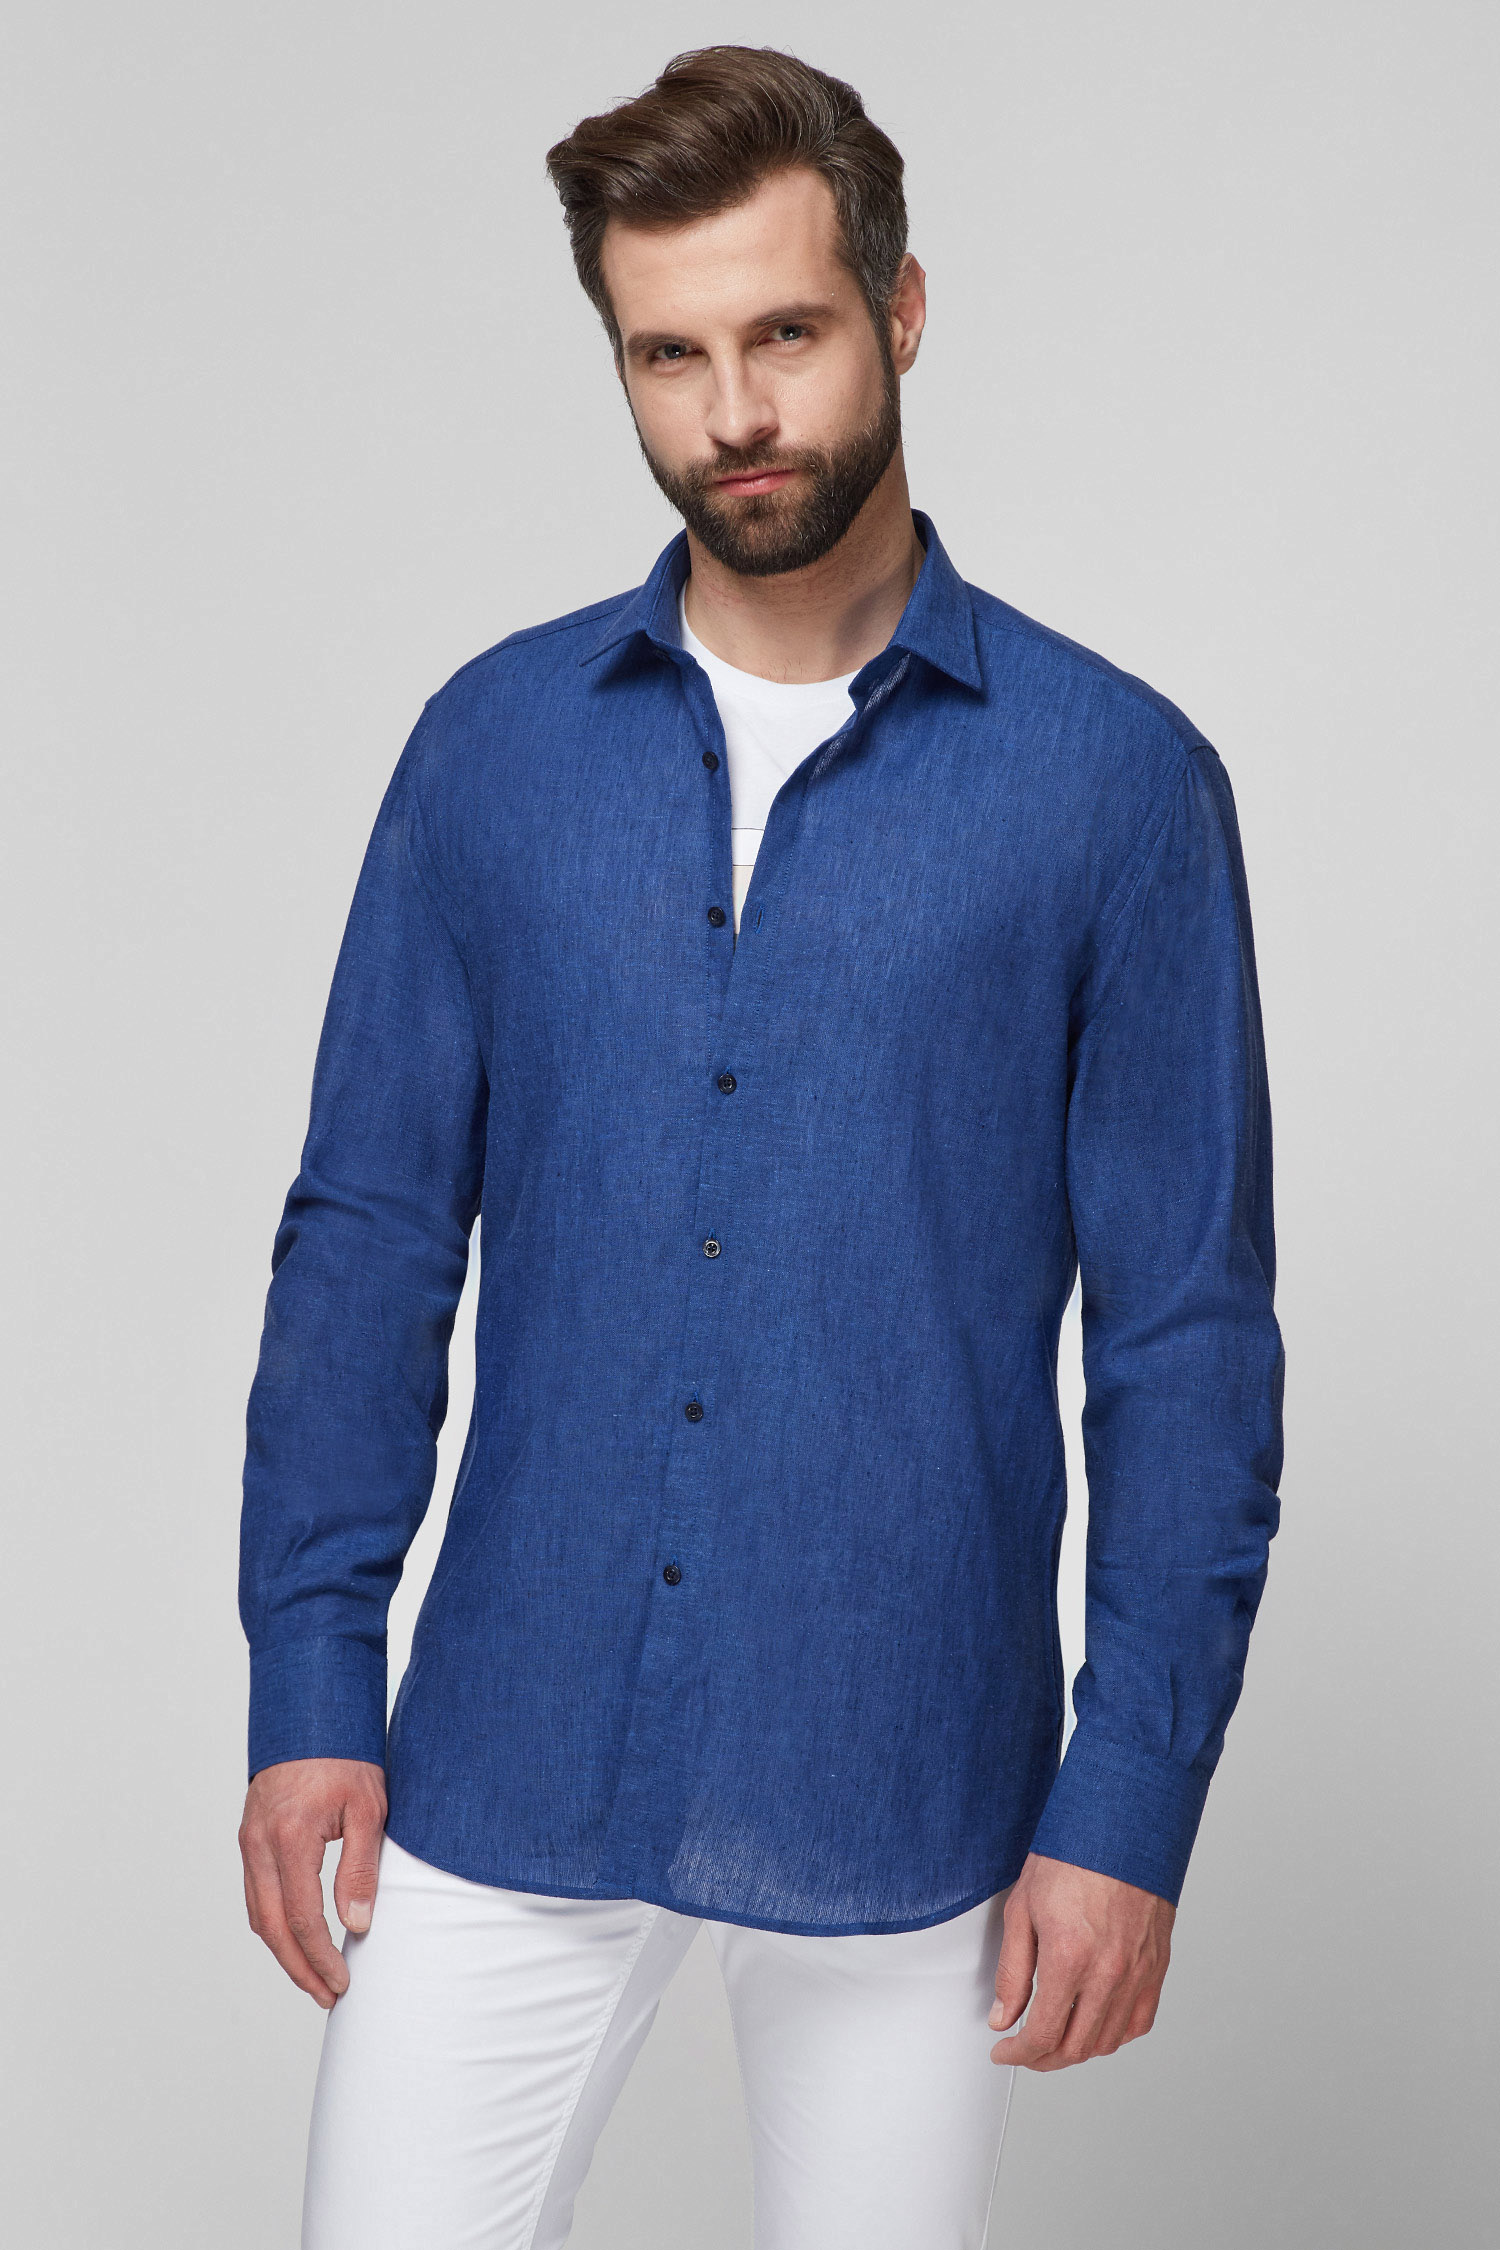 Мужская синяя льняная рубашка Karl Lagerfeld 511628.605003;660